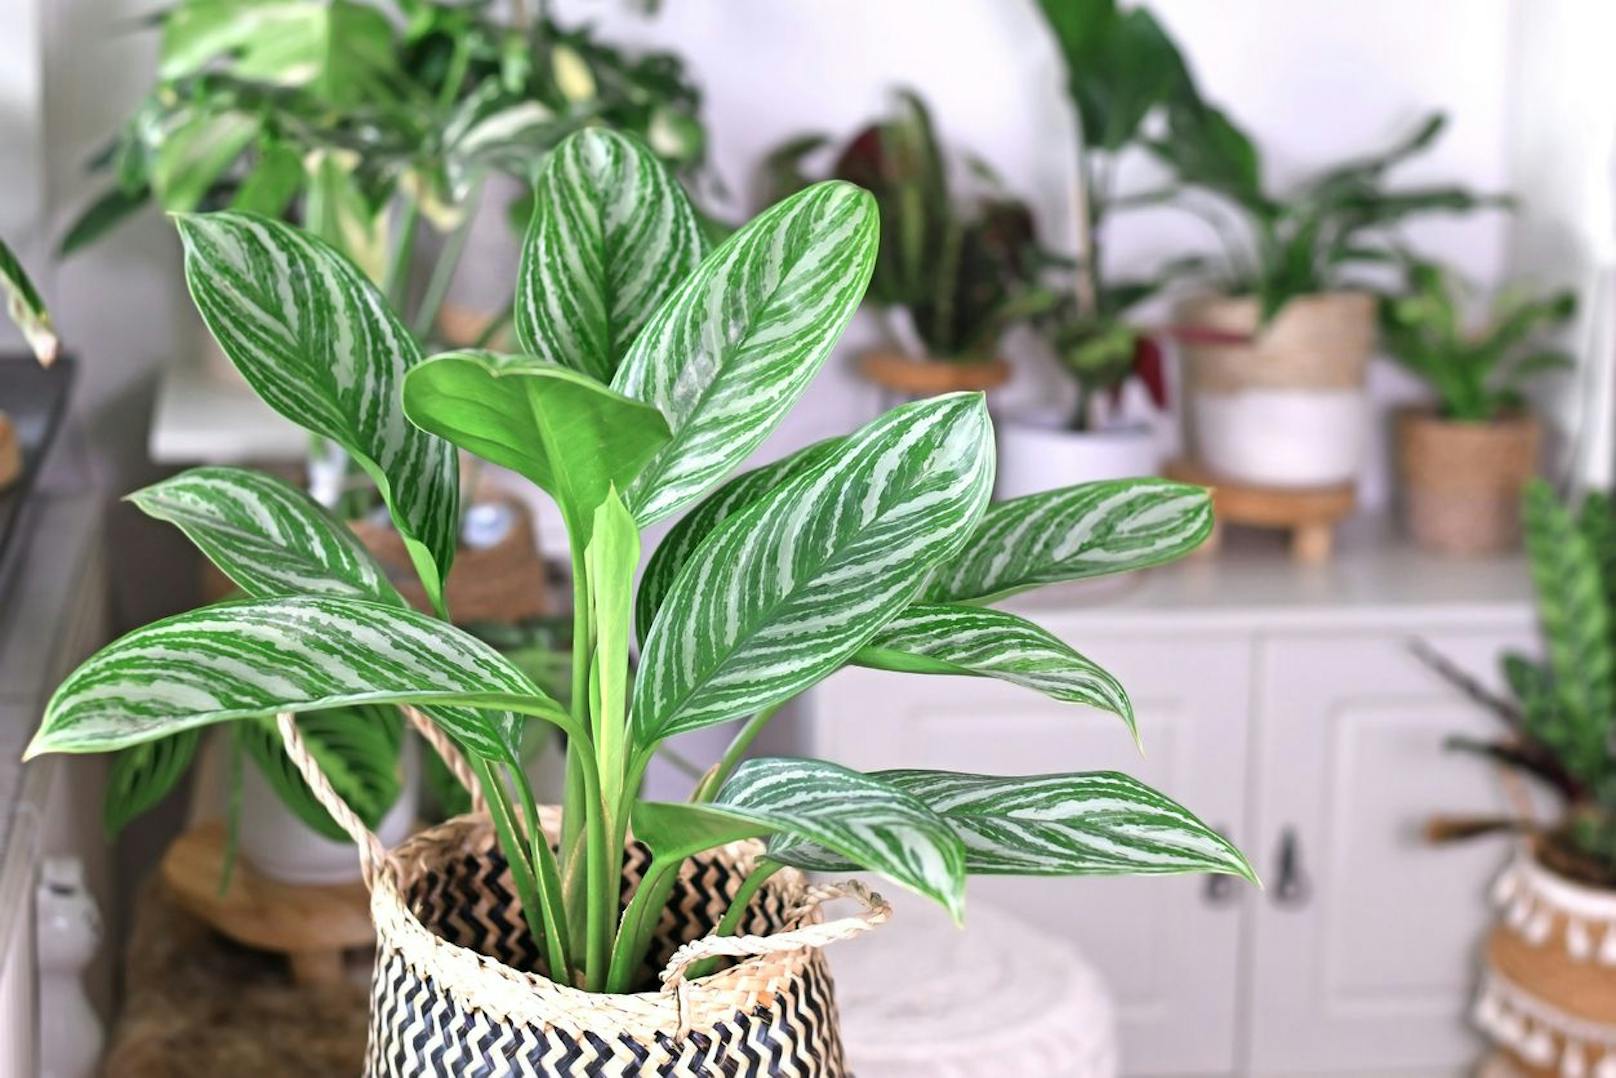 Der Kolbenfaden ist eine ganz besondere Pflanze, die nicht nur mit ihren weißen Streifen entzückt. Achte darauf wie oft du sie gießt, denn dies könnte die Luftfeuchtigkeit in deinem Zimmer immens verbessern.